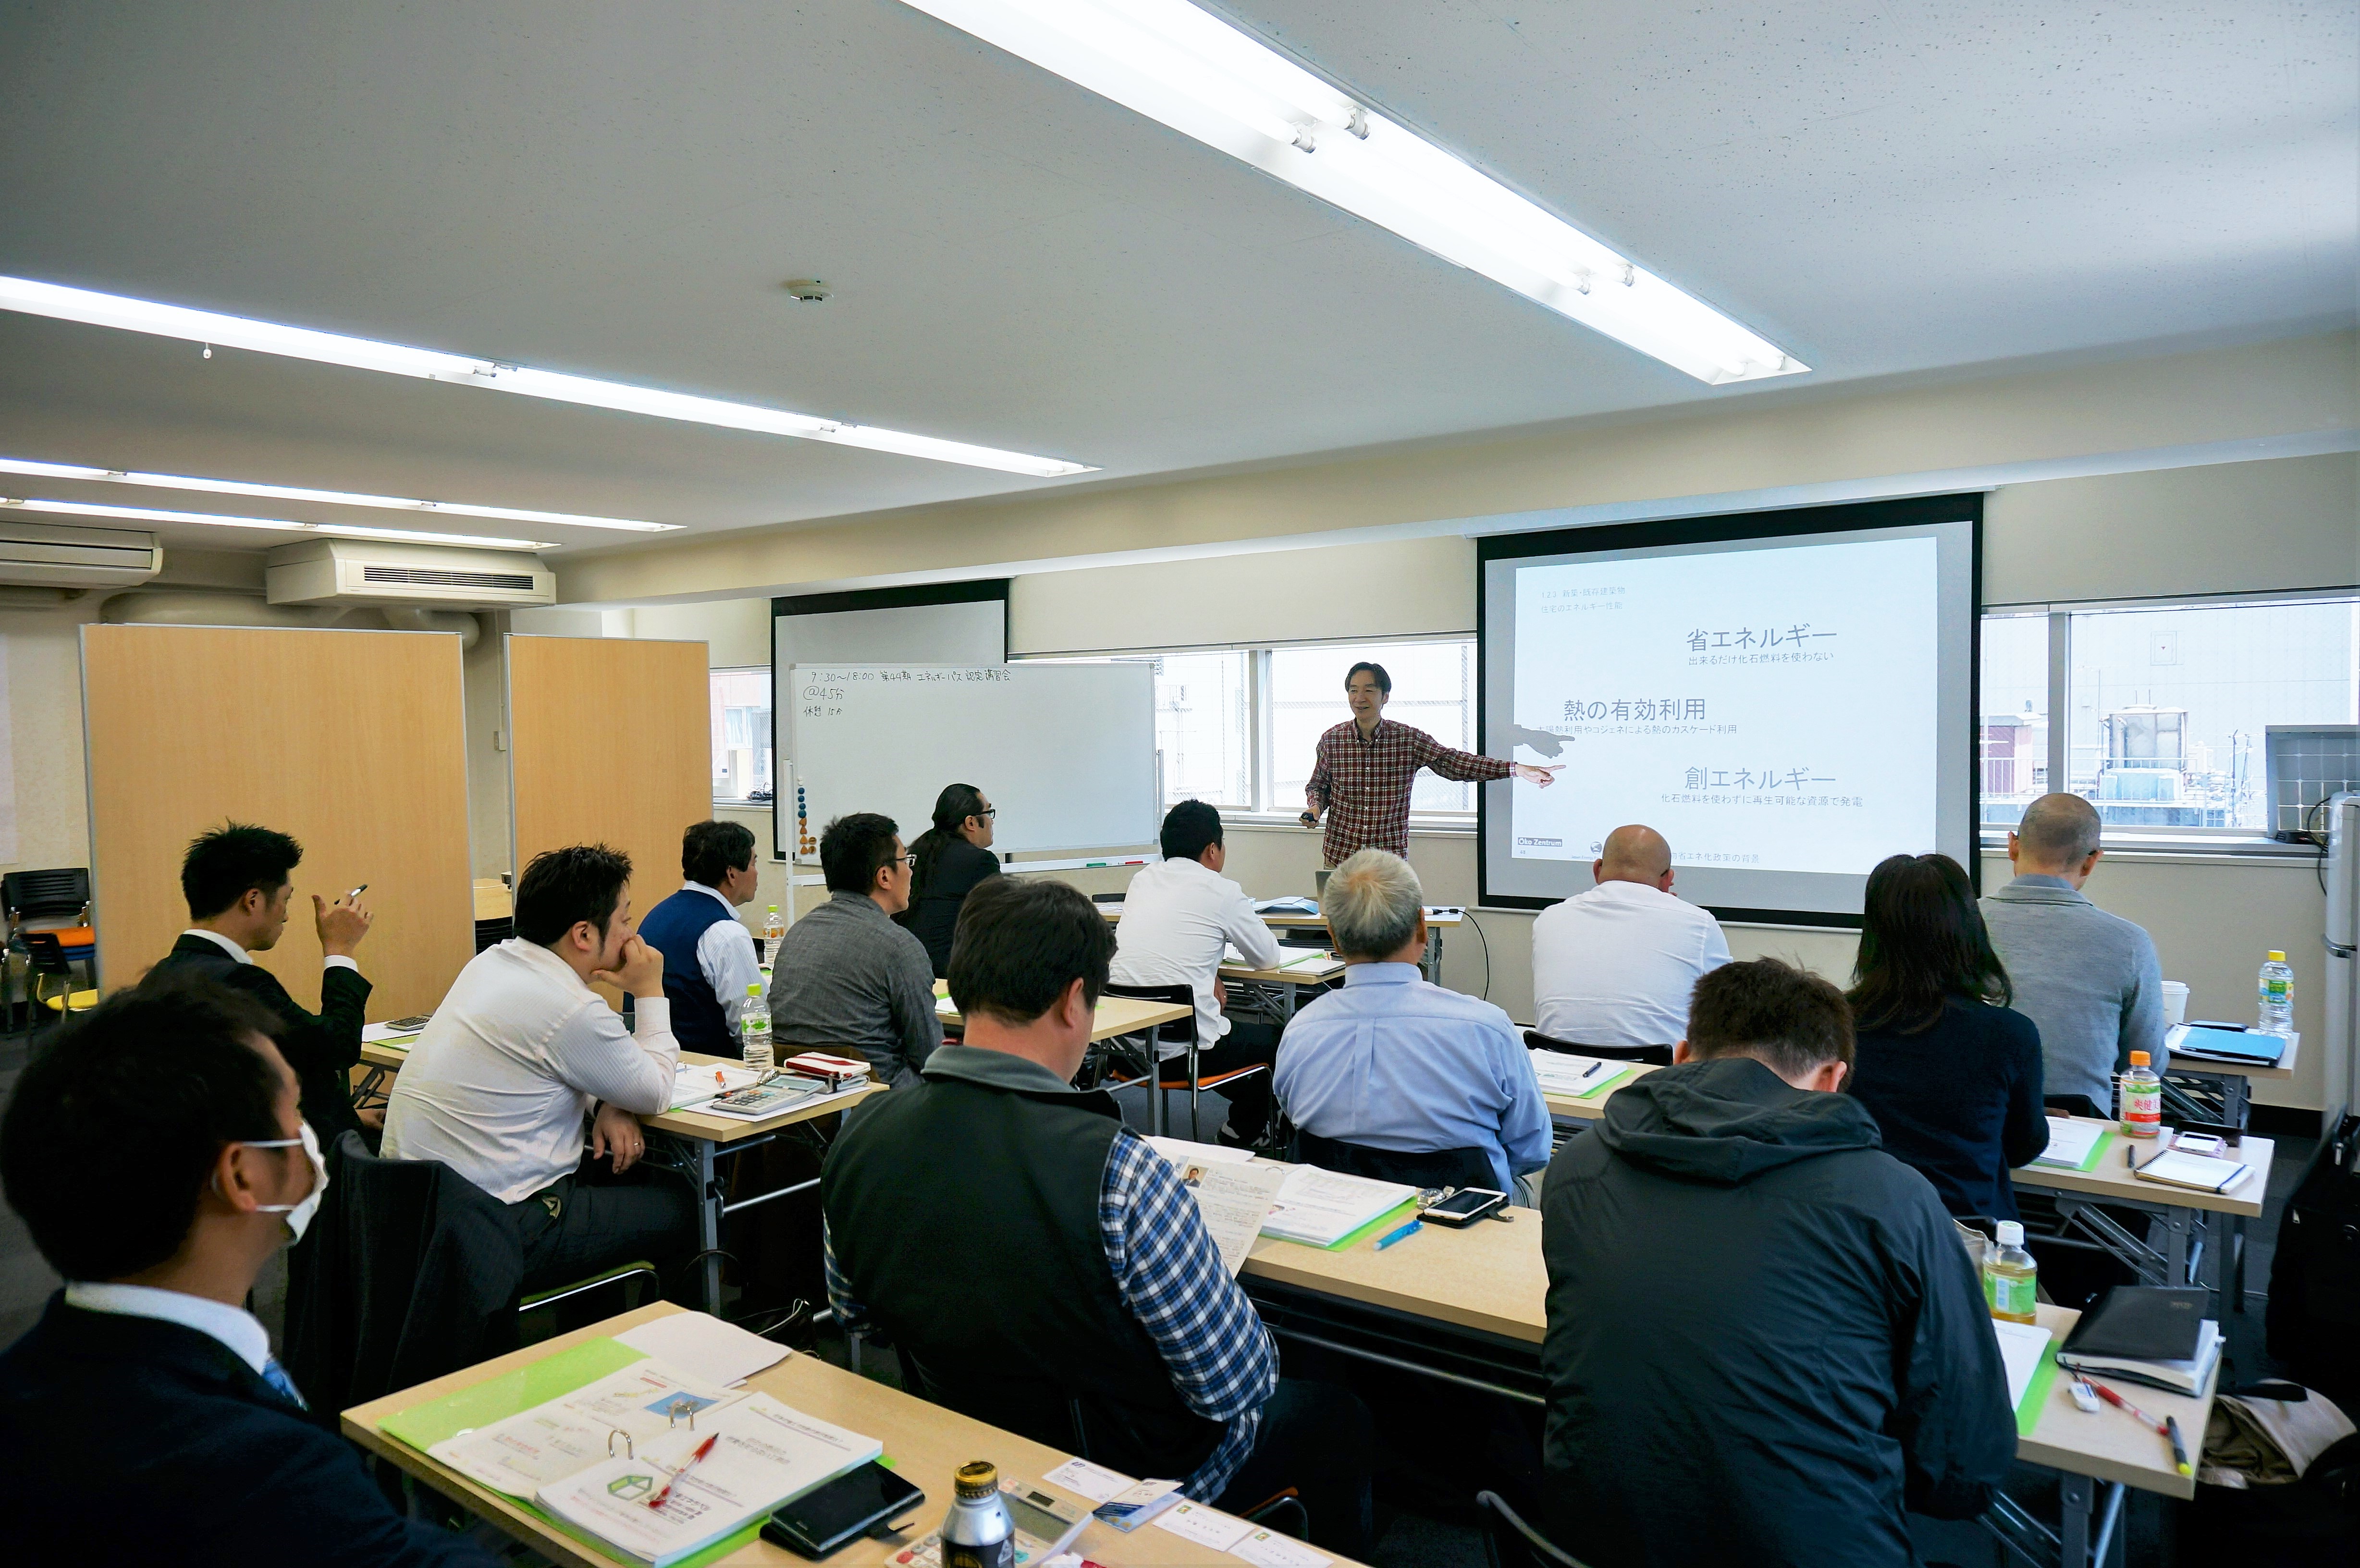 【4月20日・21日 高崎開催】エネルギーパス資格認定講習会のお知らせ